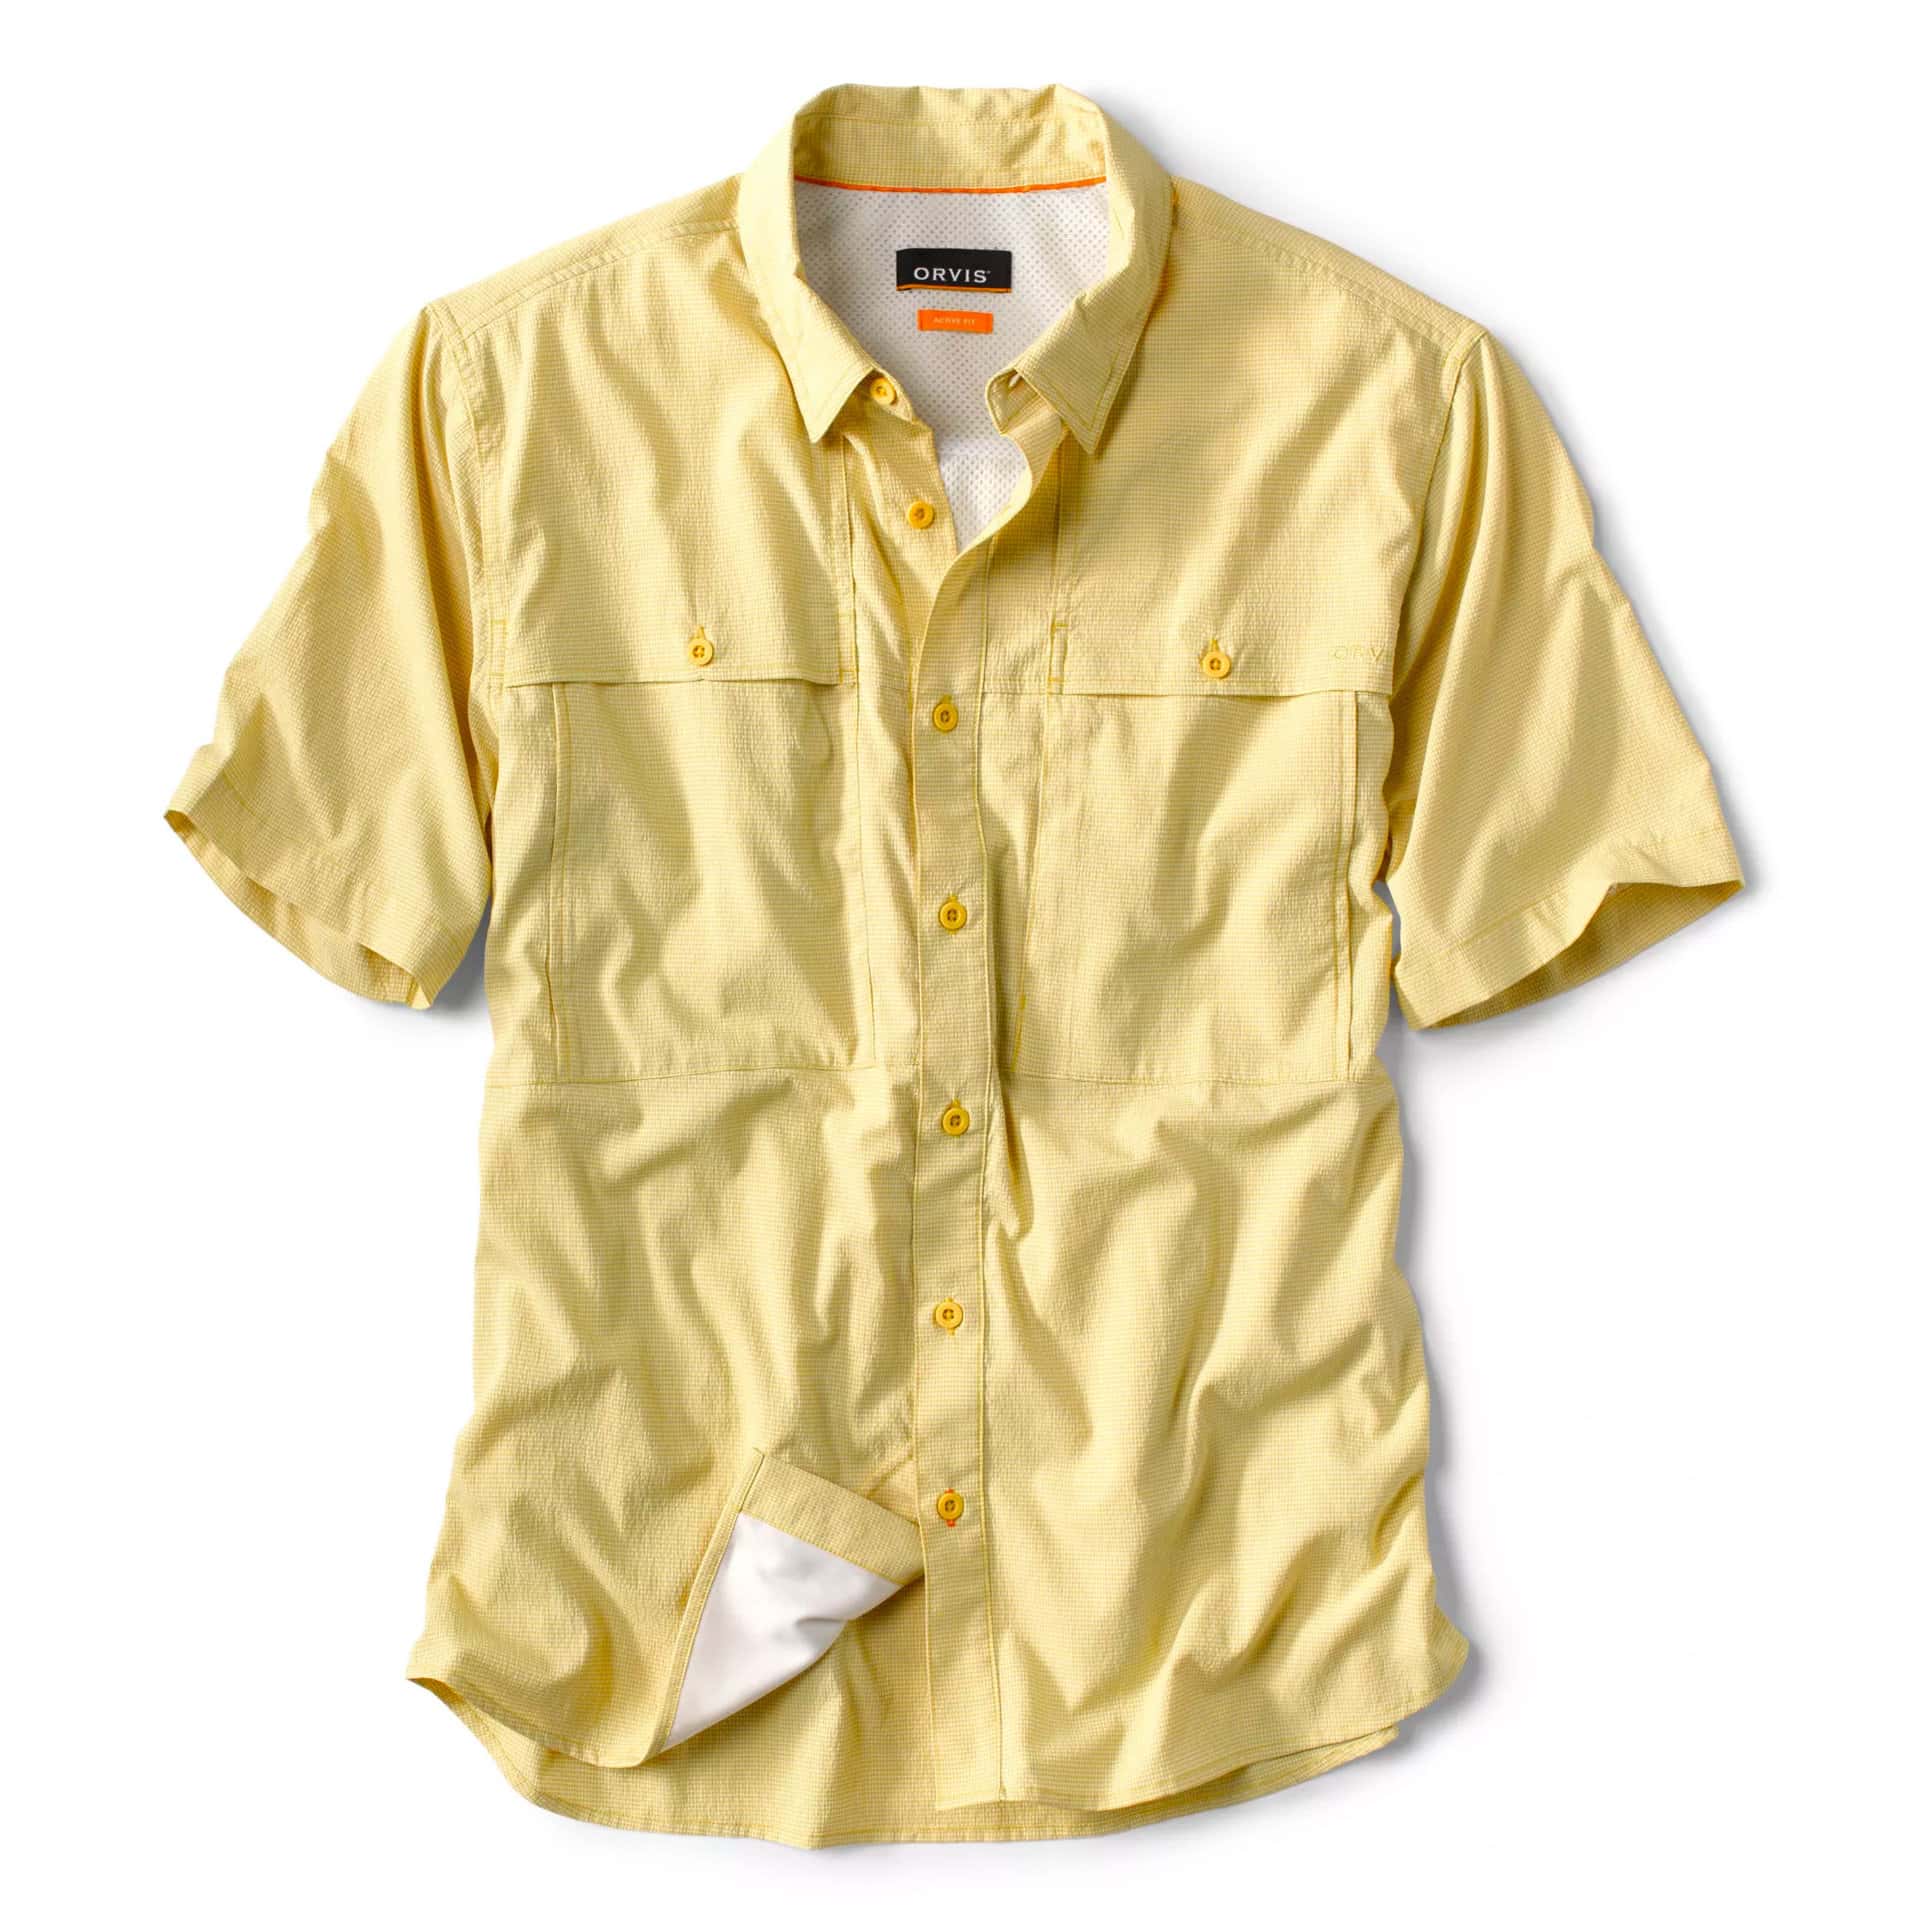 Orvis Men's Short-Sleeved Open-Air Caster Shirt